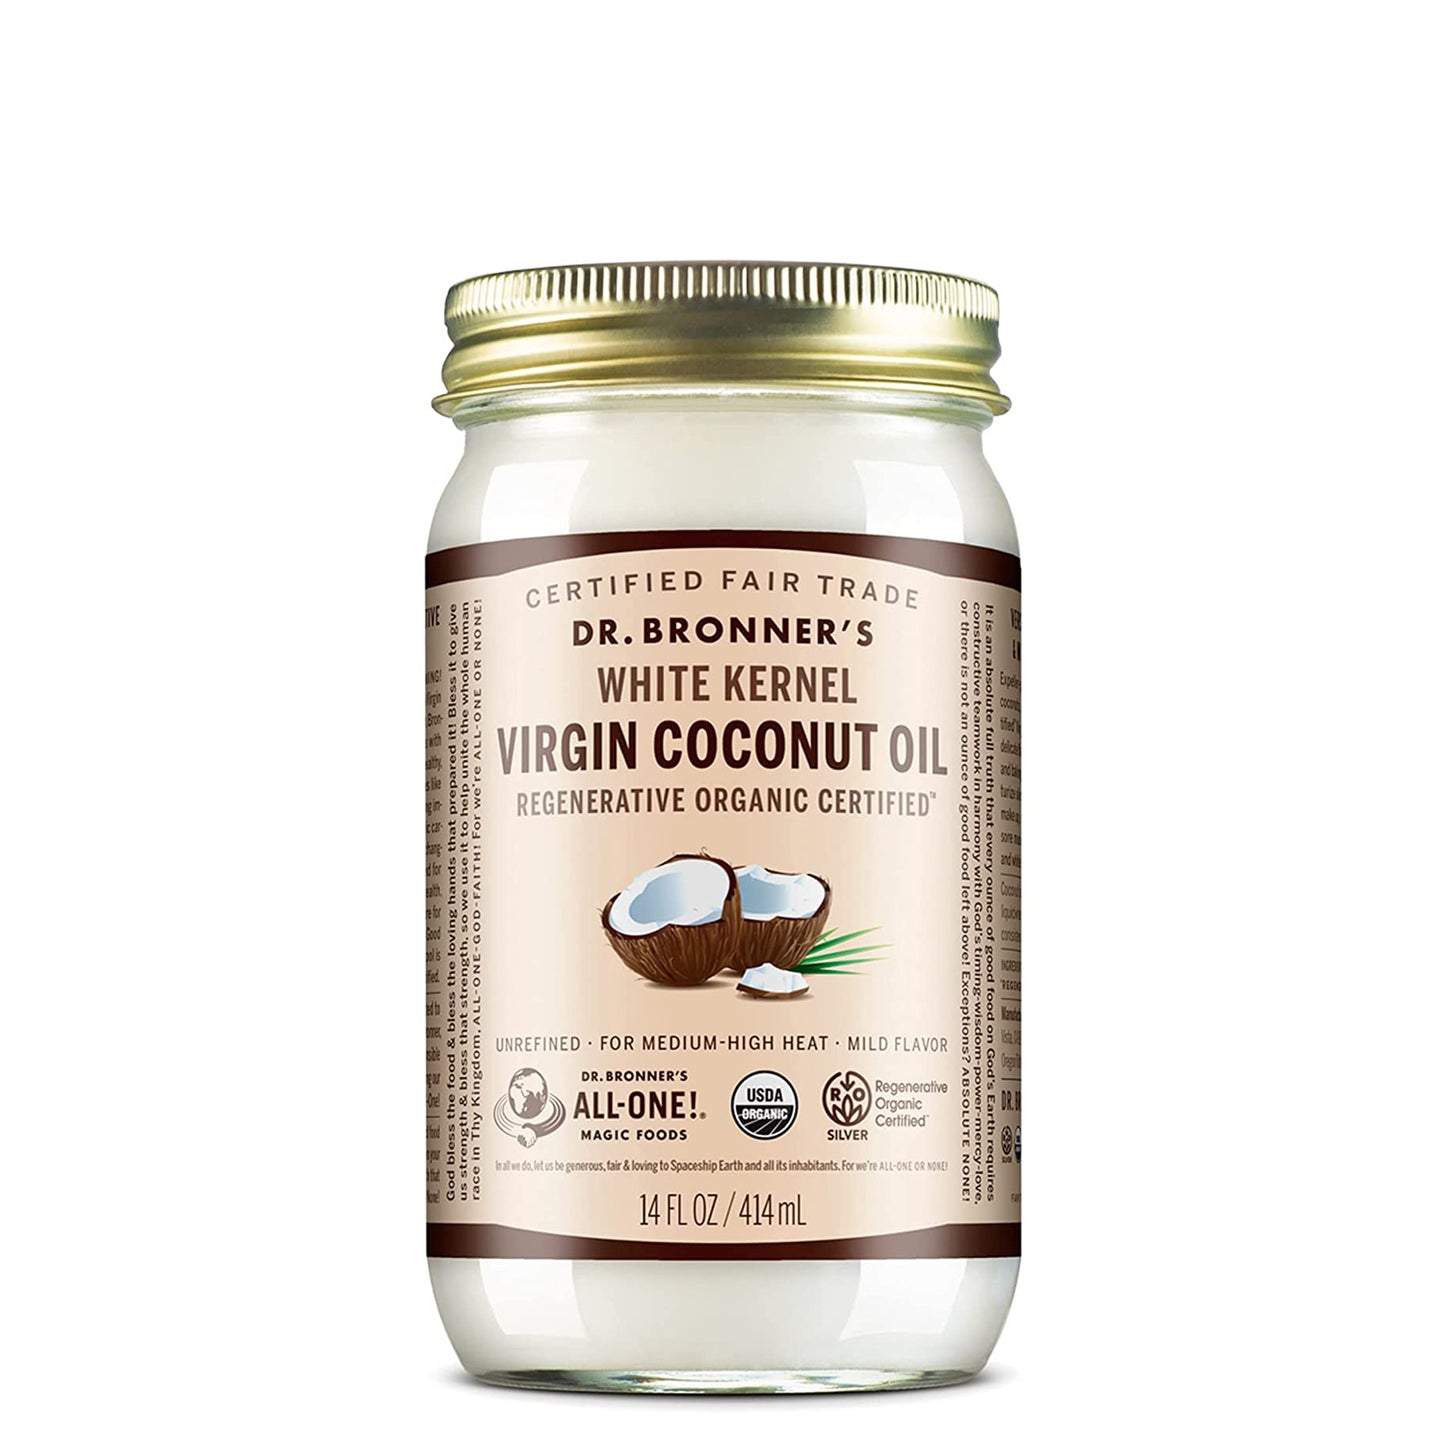 White Kernel Organic Virgin Coconut Oil